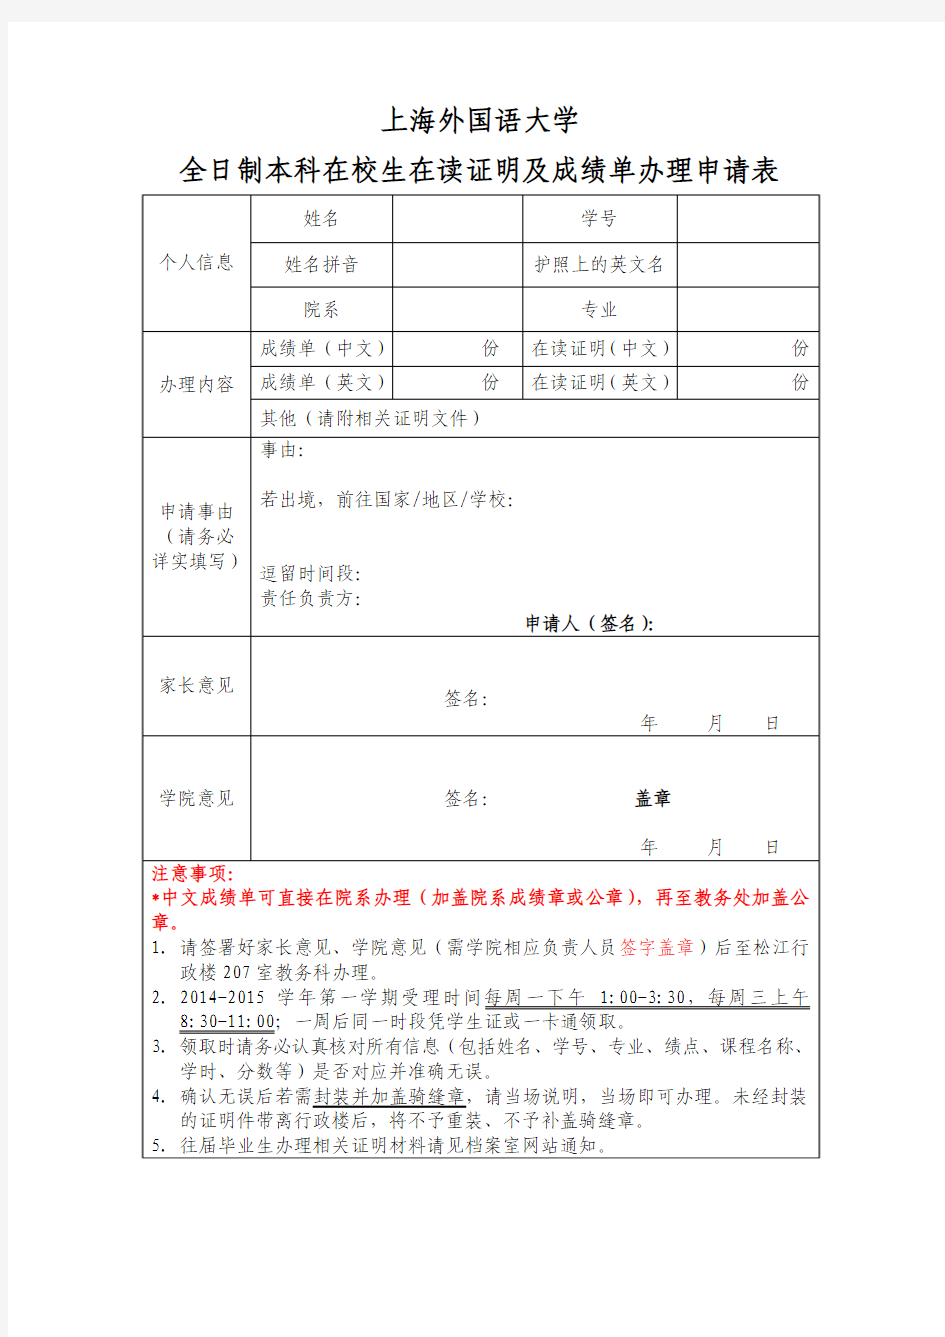 上海外国语大学全日制本科在校生在读证明及成绩单办理申请表-2014w